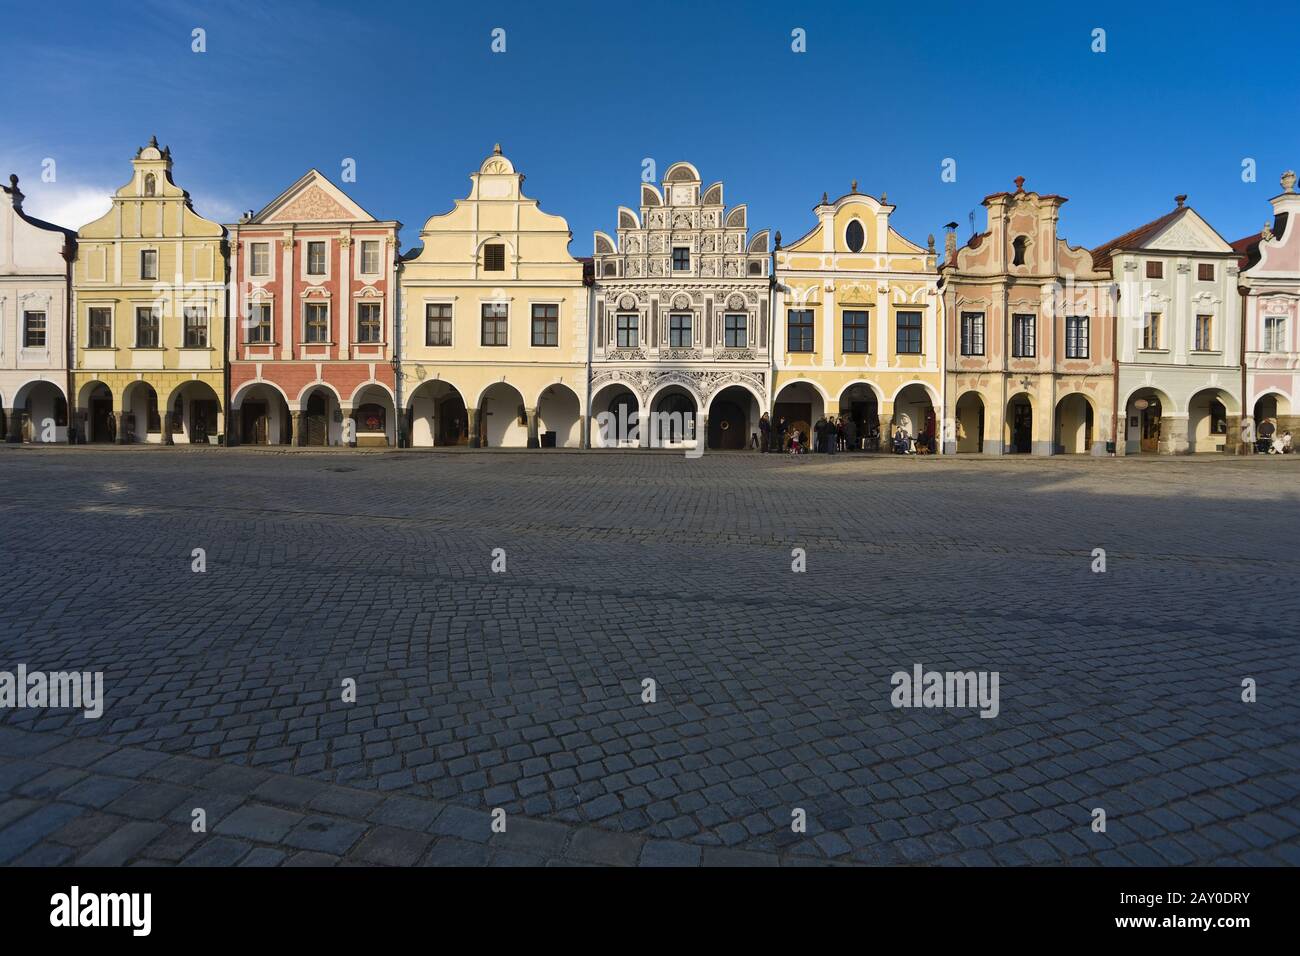 Altstadt in Telc, Tschechoslowakei, Europa - Altstadt in Telc, Tschechoslowakei, Europa Stockfoto